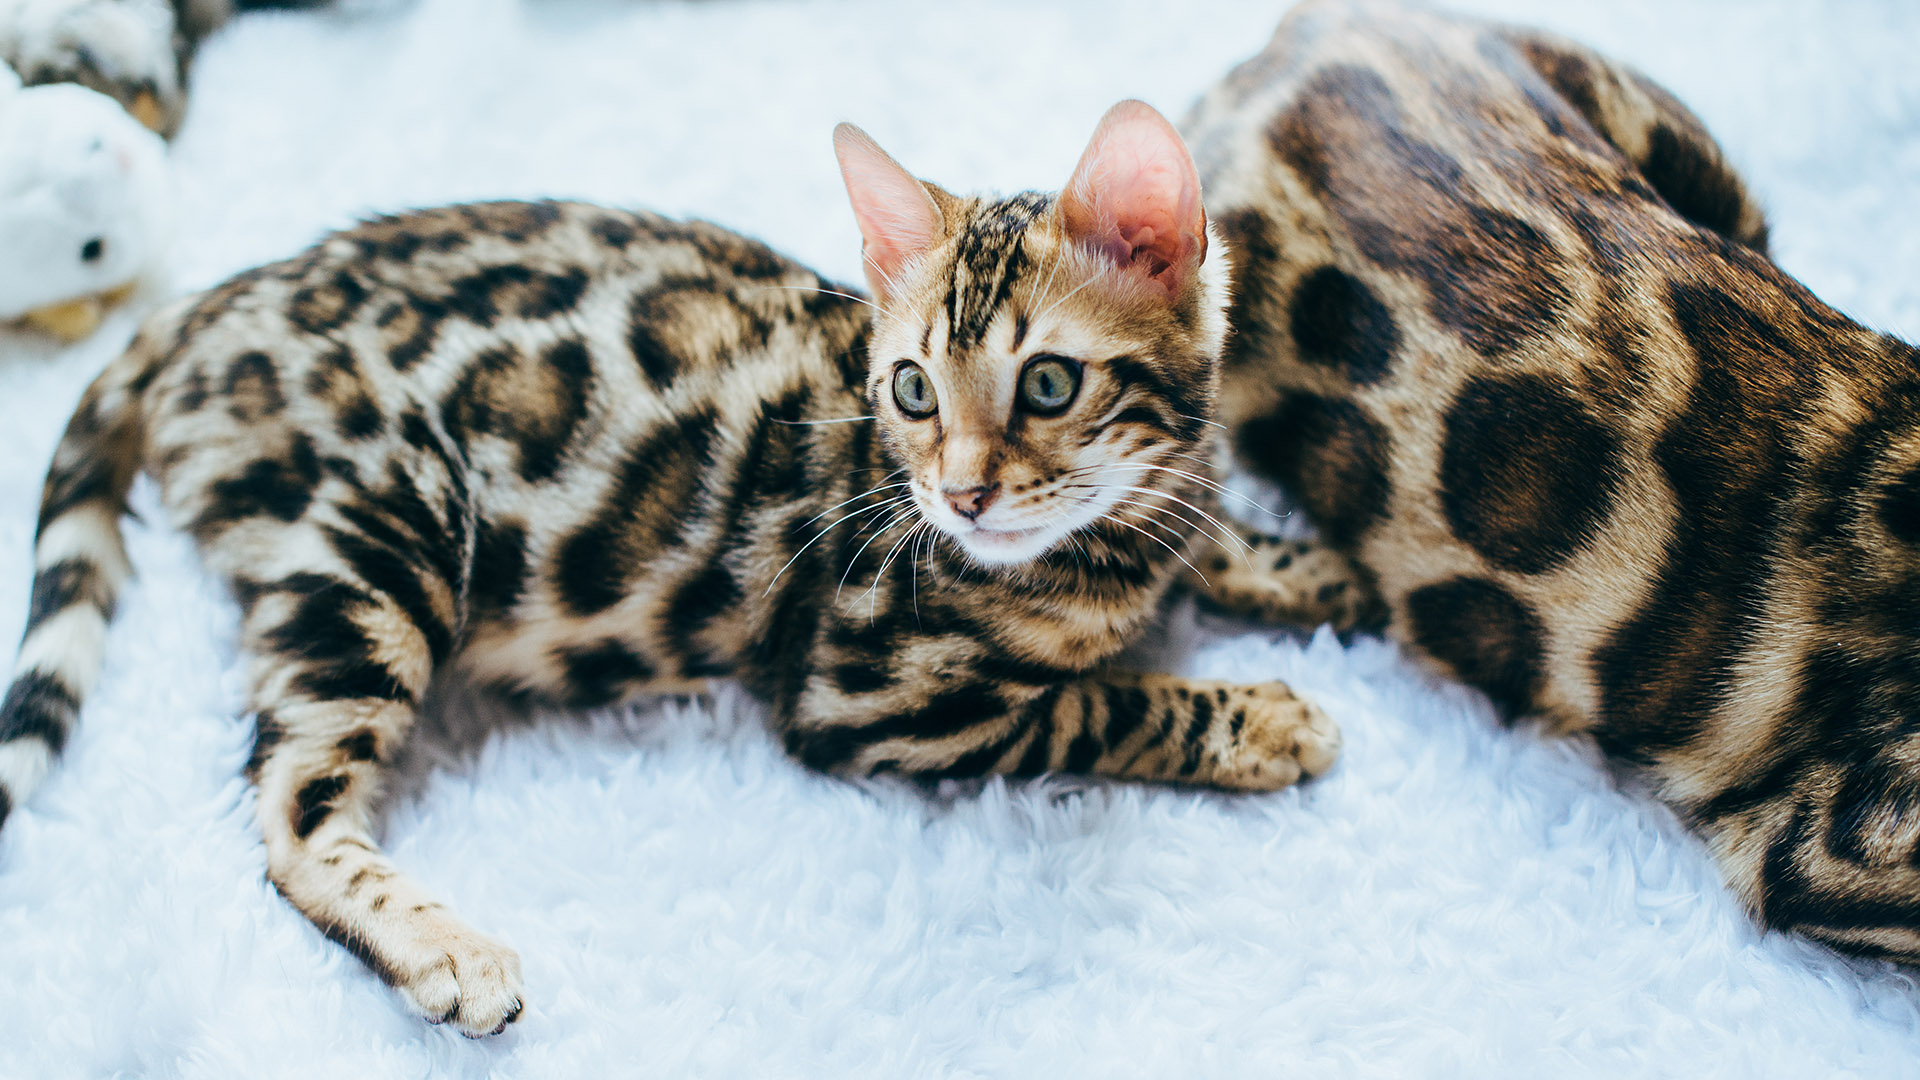 El gato bengala, fue un resultado fortuito del cruce casual entre un gato doméstico y una hembra gato leopardo (Prionailurus bengalensis)